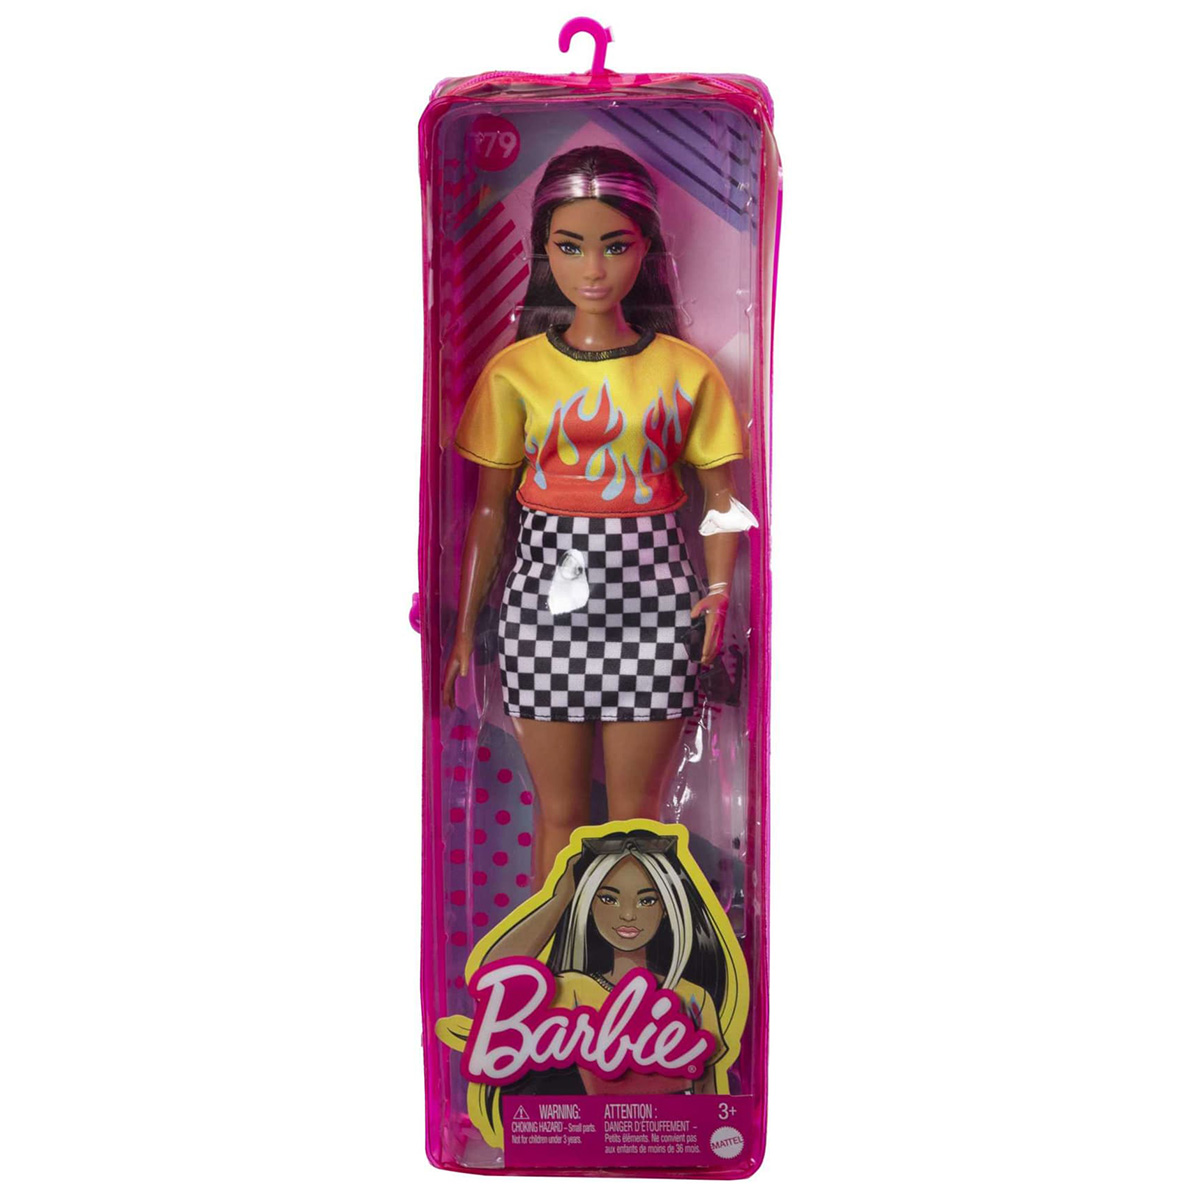 Barbie(R) Fashionista Doll